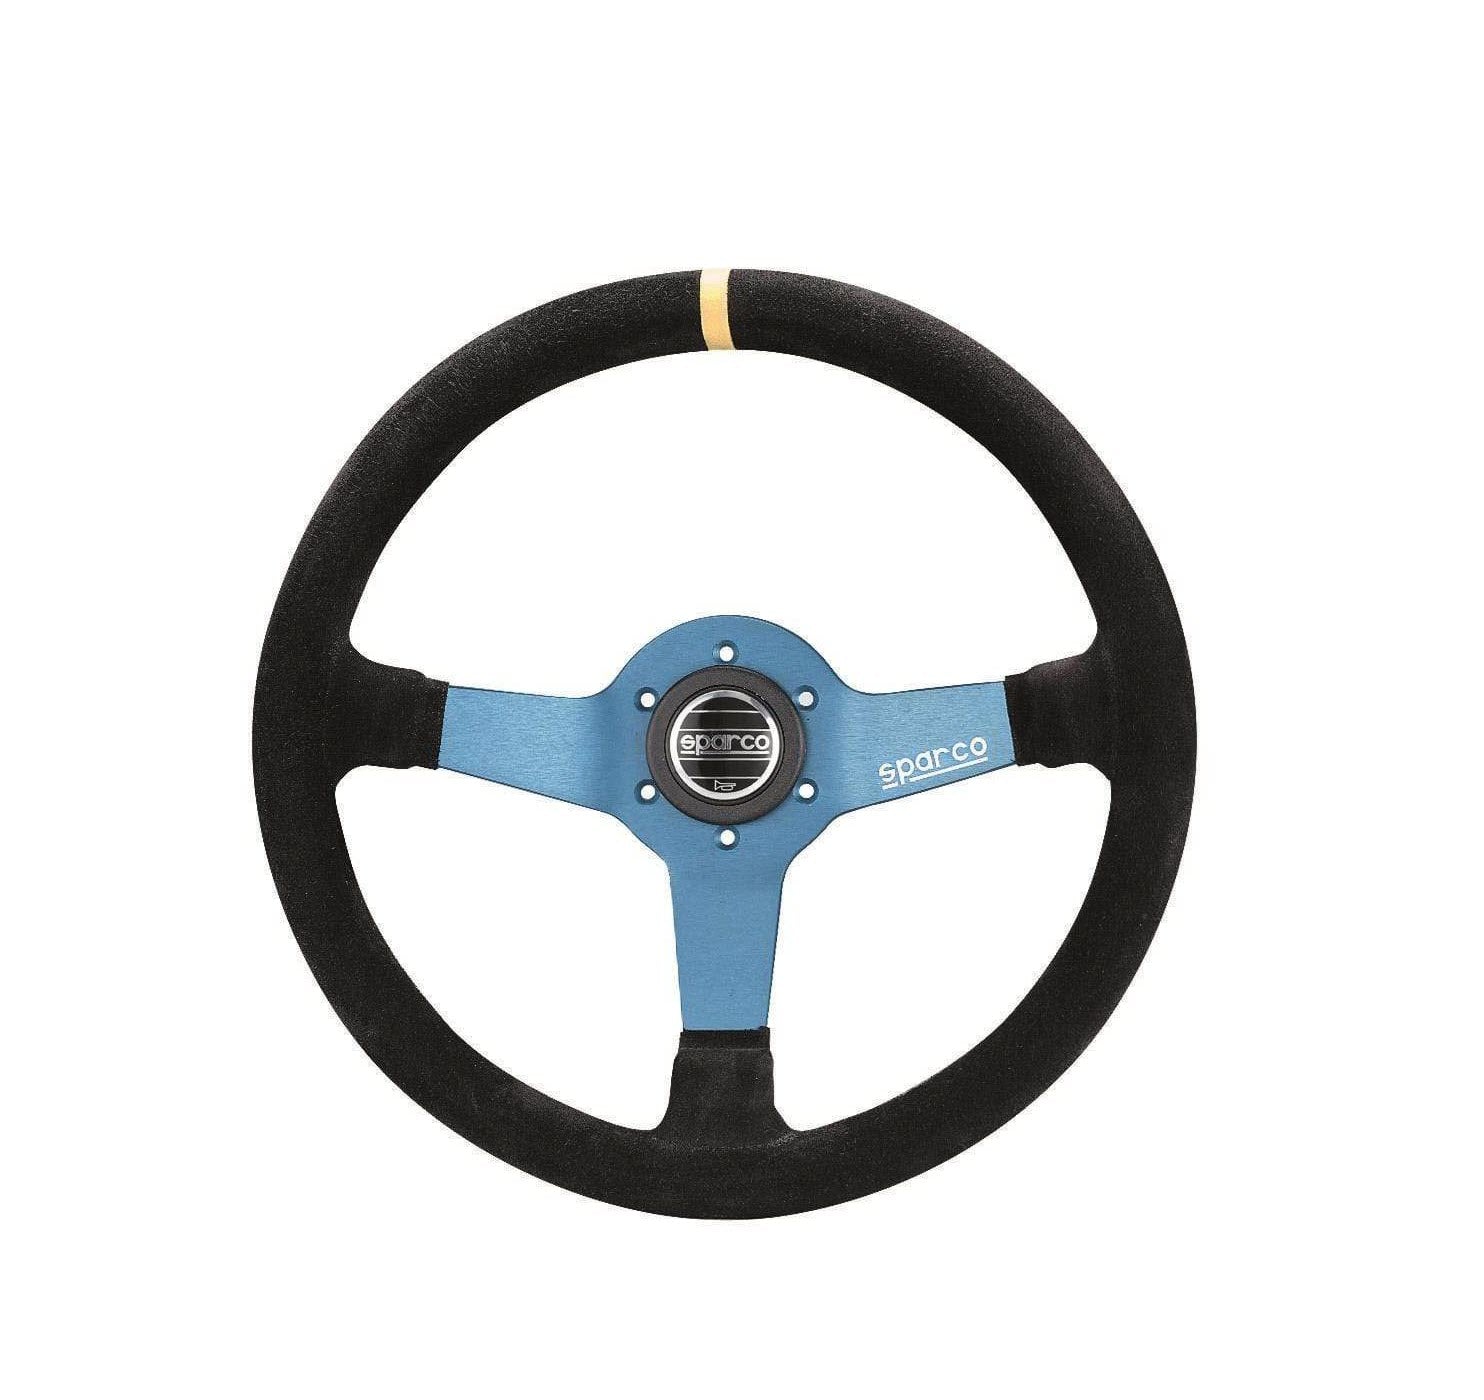 Sparco 3-Spoke Monza L550 Series Street Racing Black Suede Steering Wheel - Dirty Racing Products